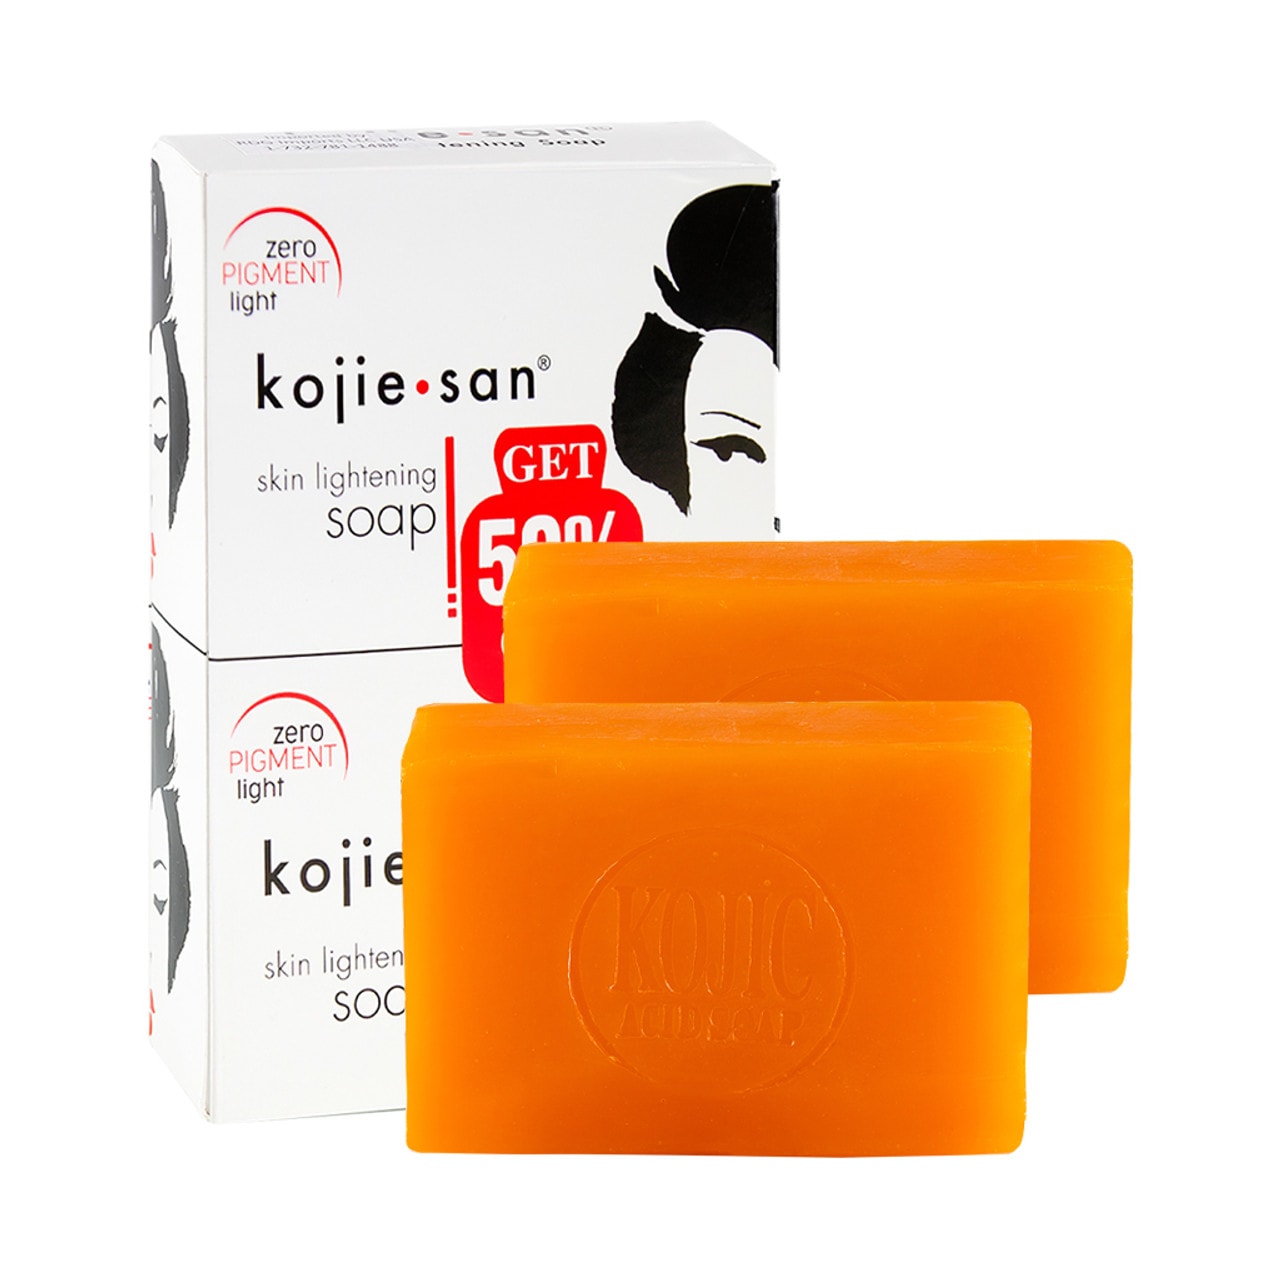 Kojie San Skin Lightening Kojic Soap